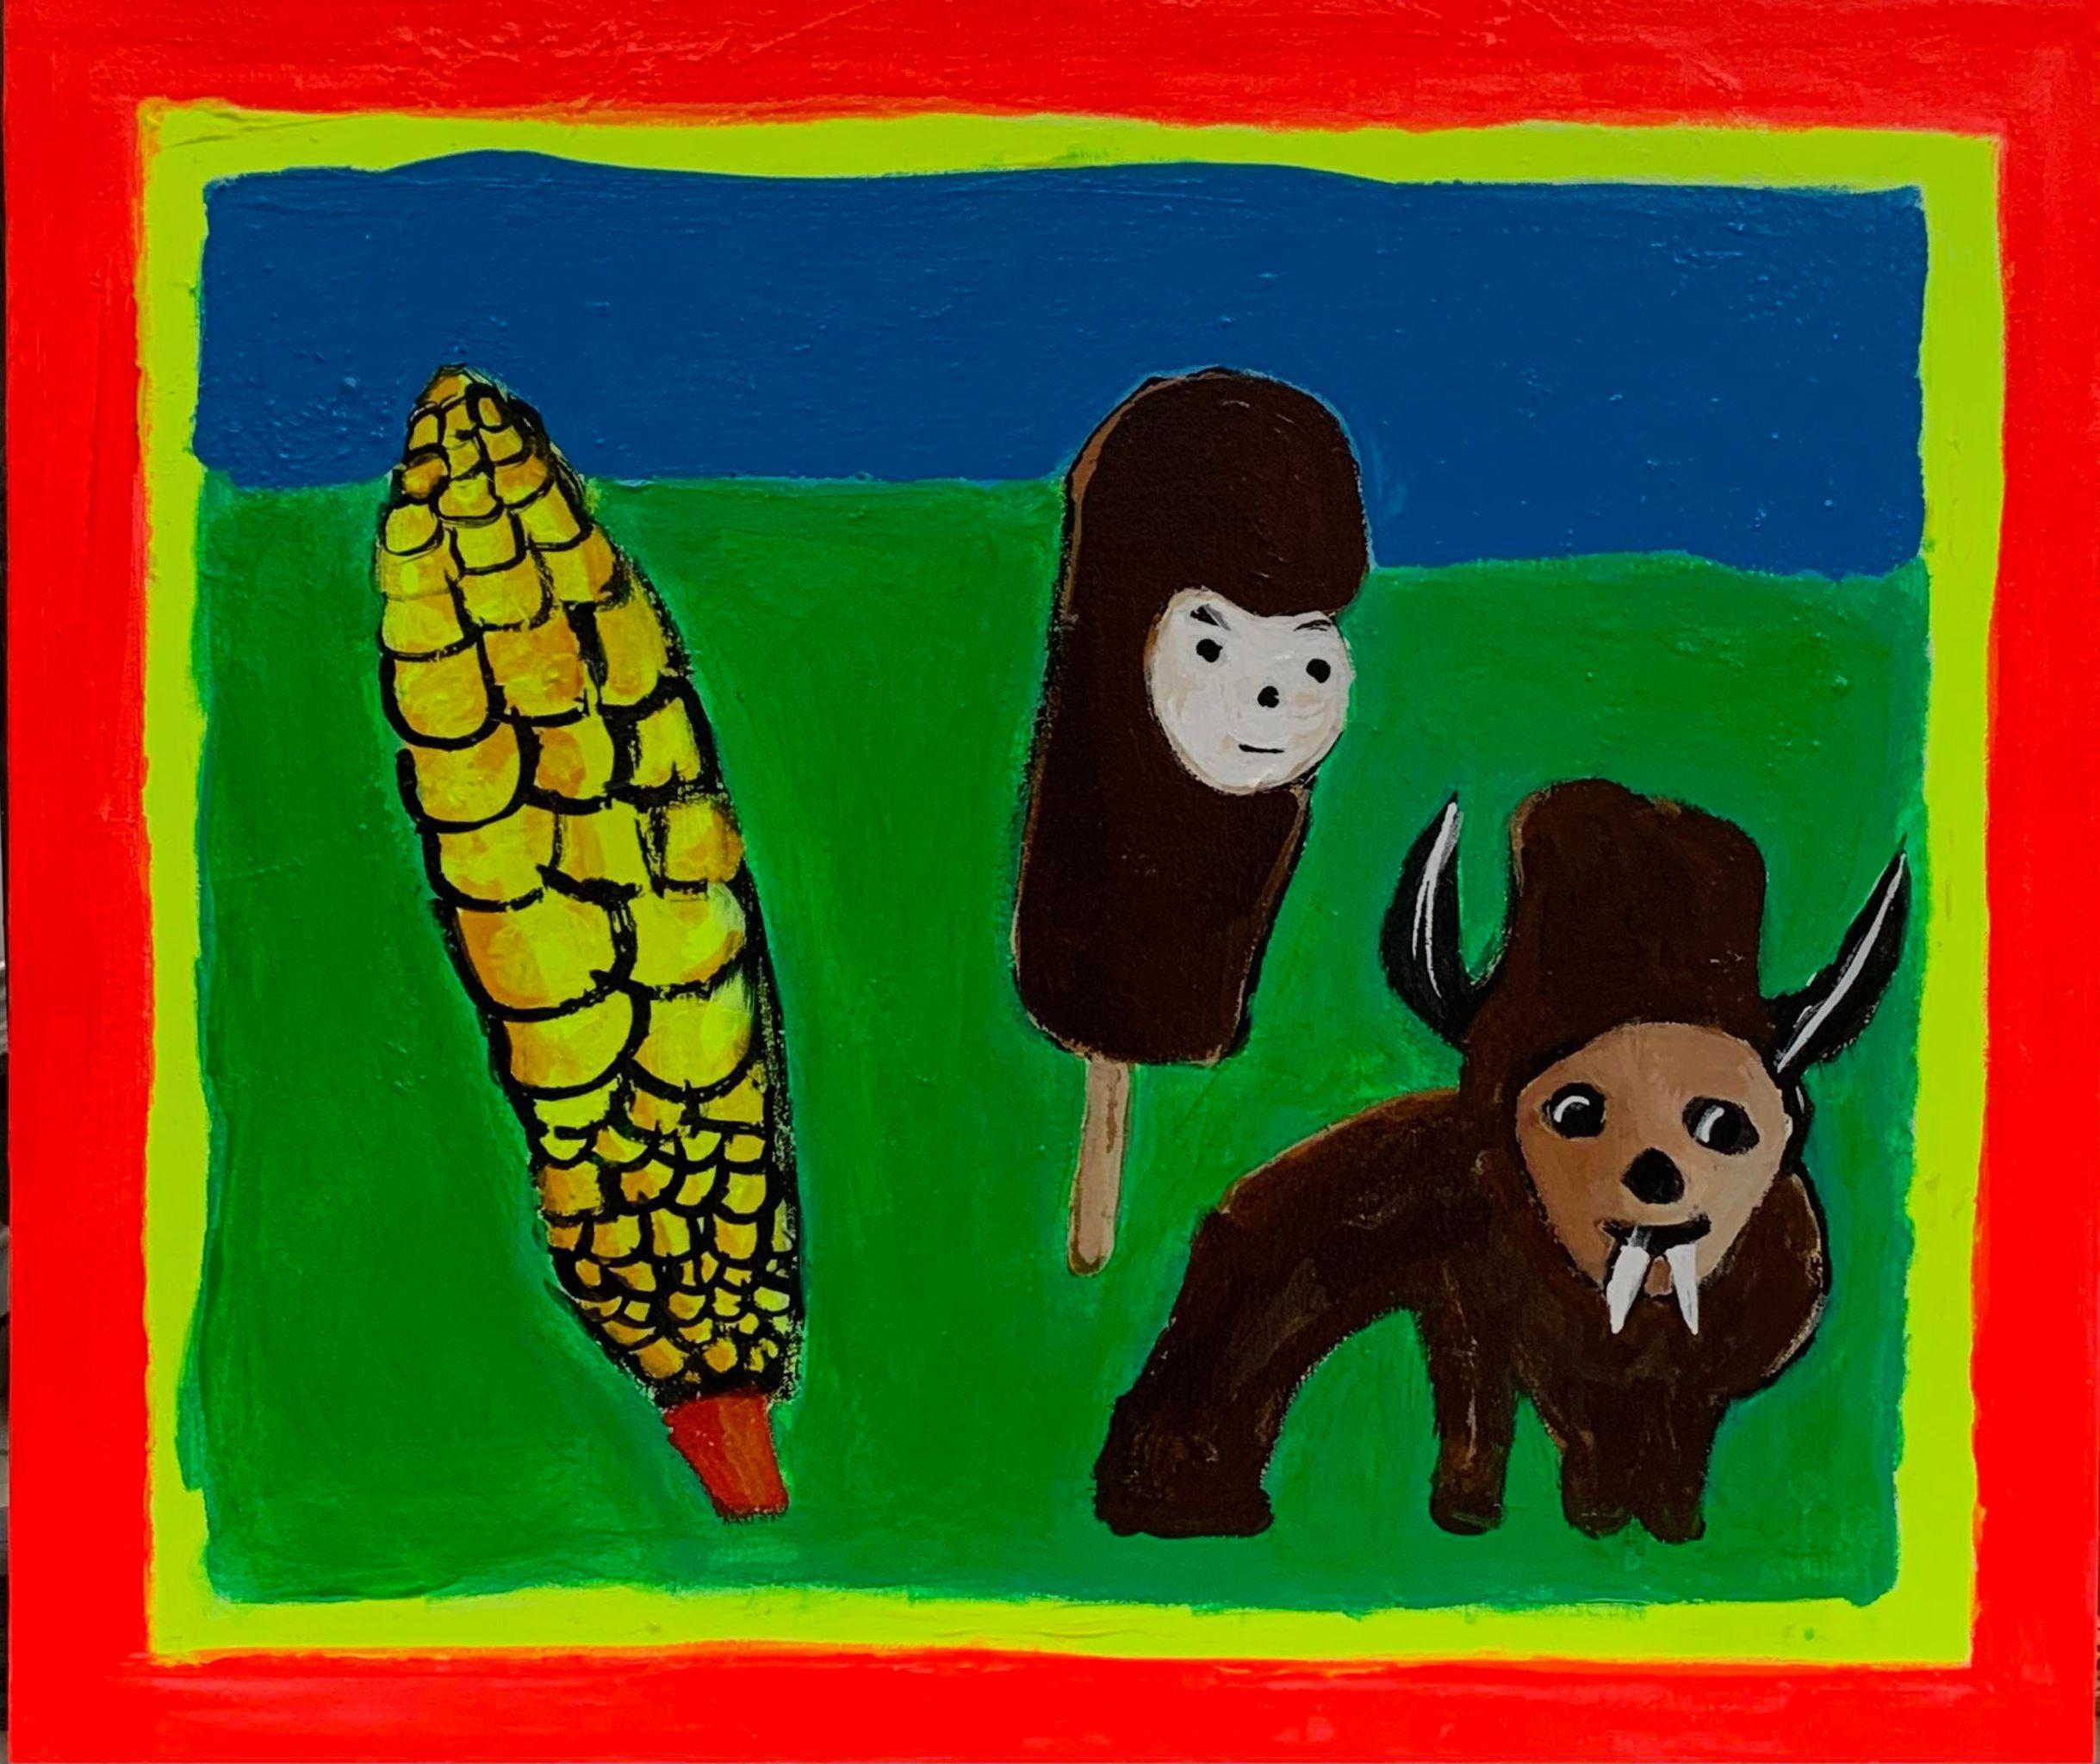 Braun und Gelb 2
2022
Acryl auf Leinwand
24 x 26,5 Zoll

Brian Leos produktives Schaffen ist irgendwo zwischen Grunge-Surrealismus, Post Painterly Pop und der New York School angesiedelt. Seine unmittelbare figurative Zeichnung hat einen